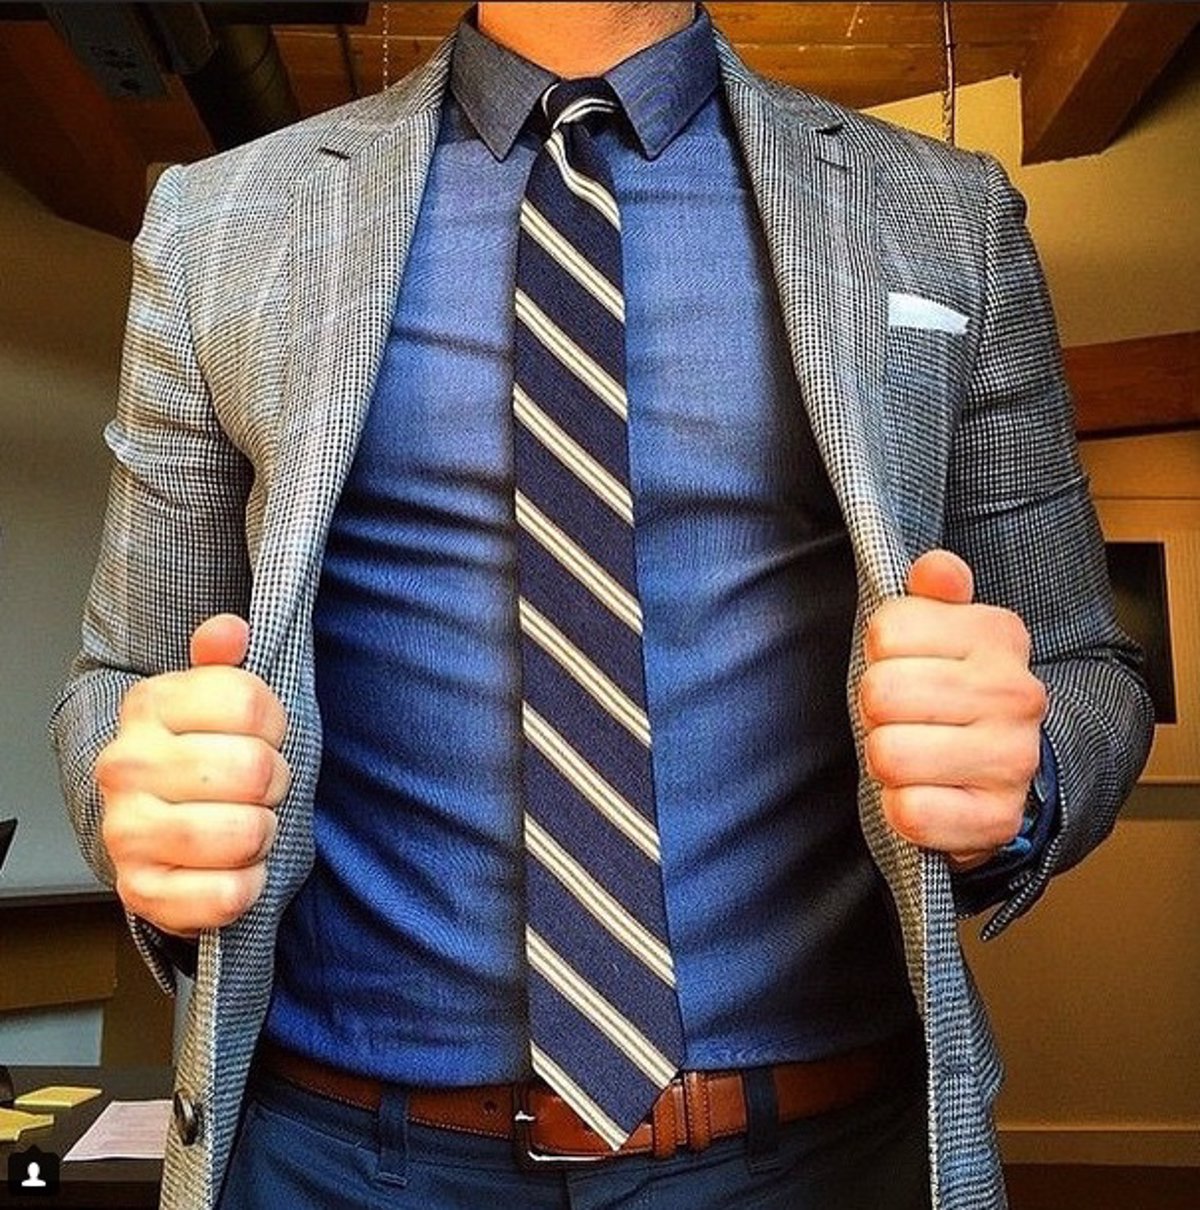 7 reglas de oro para corbata que todo hombre debería